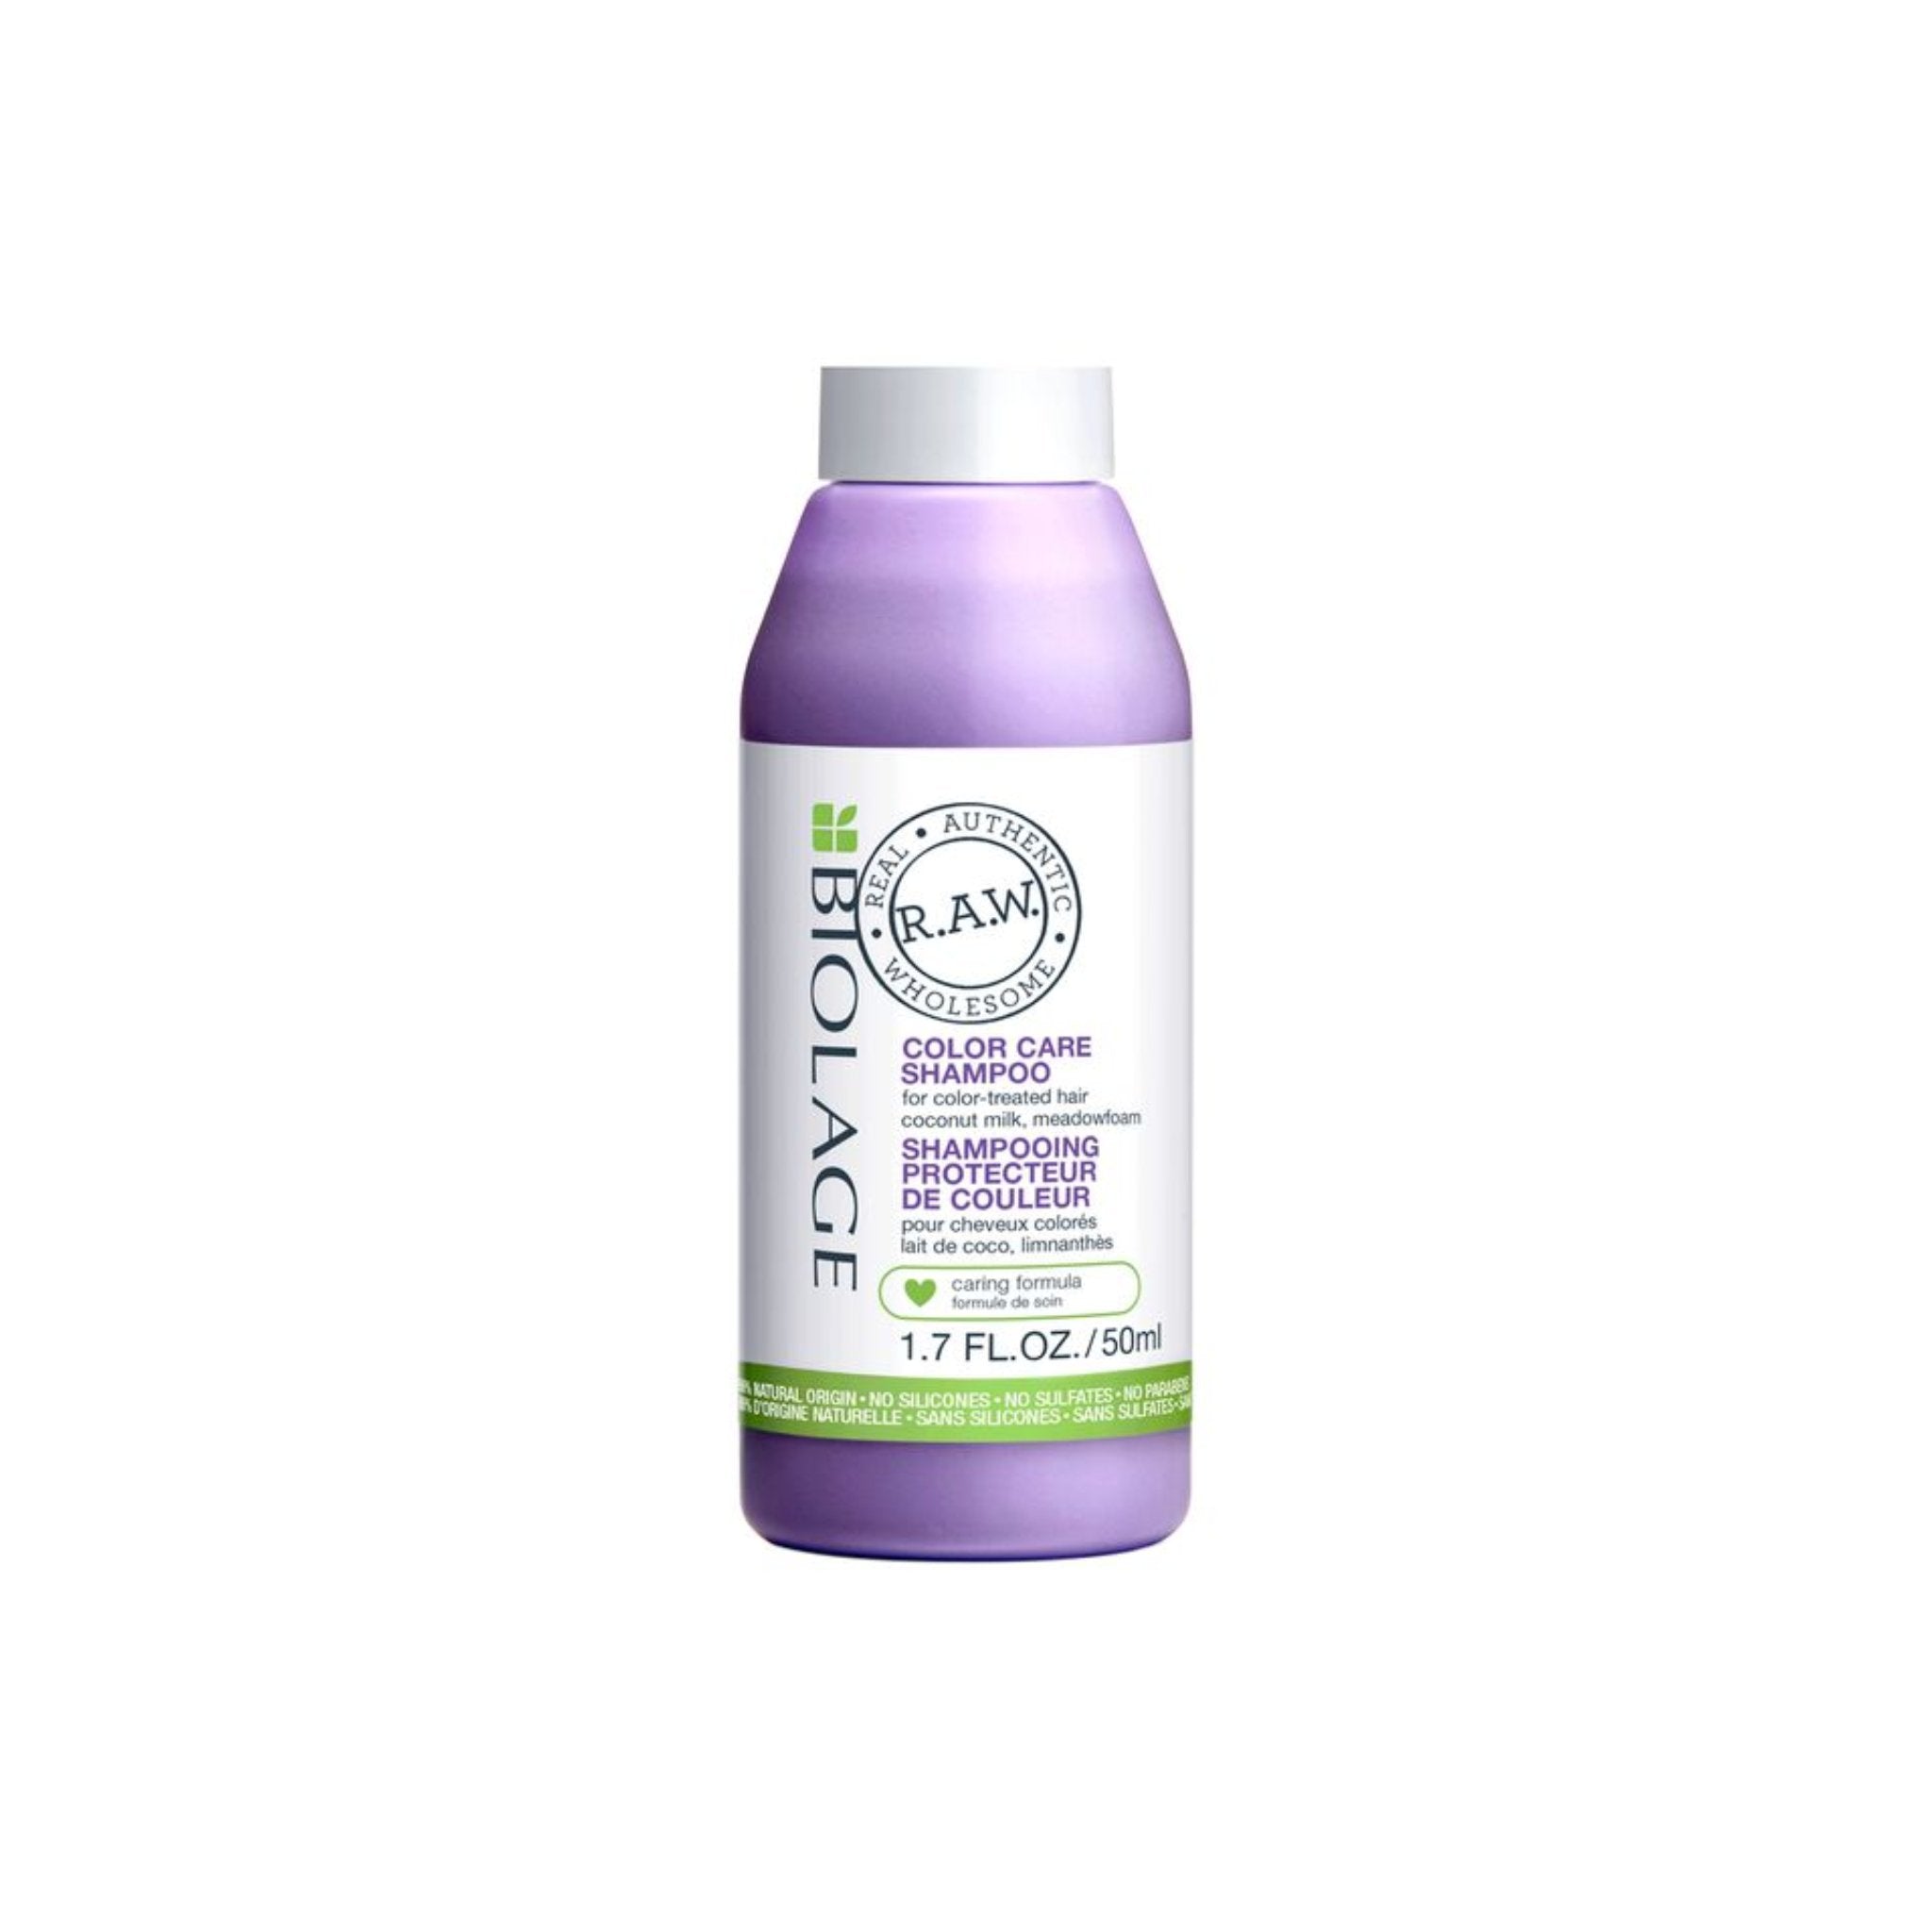 Biolage. R.A.W. Shampoing Protecteur de Couleur - 50 ml - Concept C. Shop